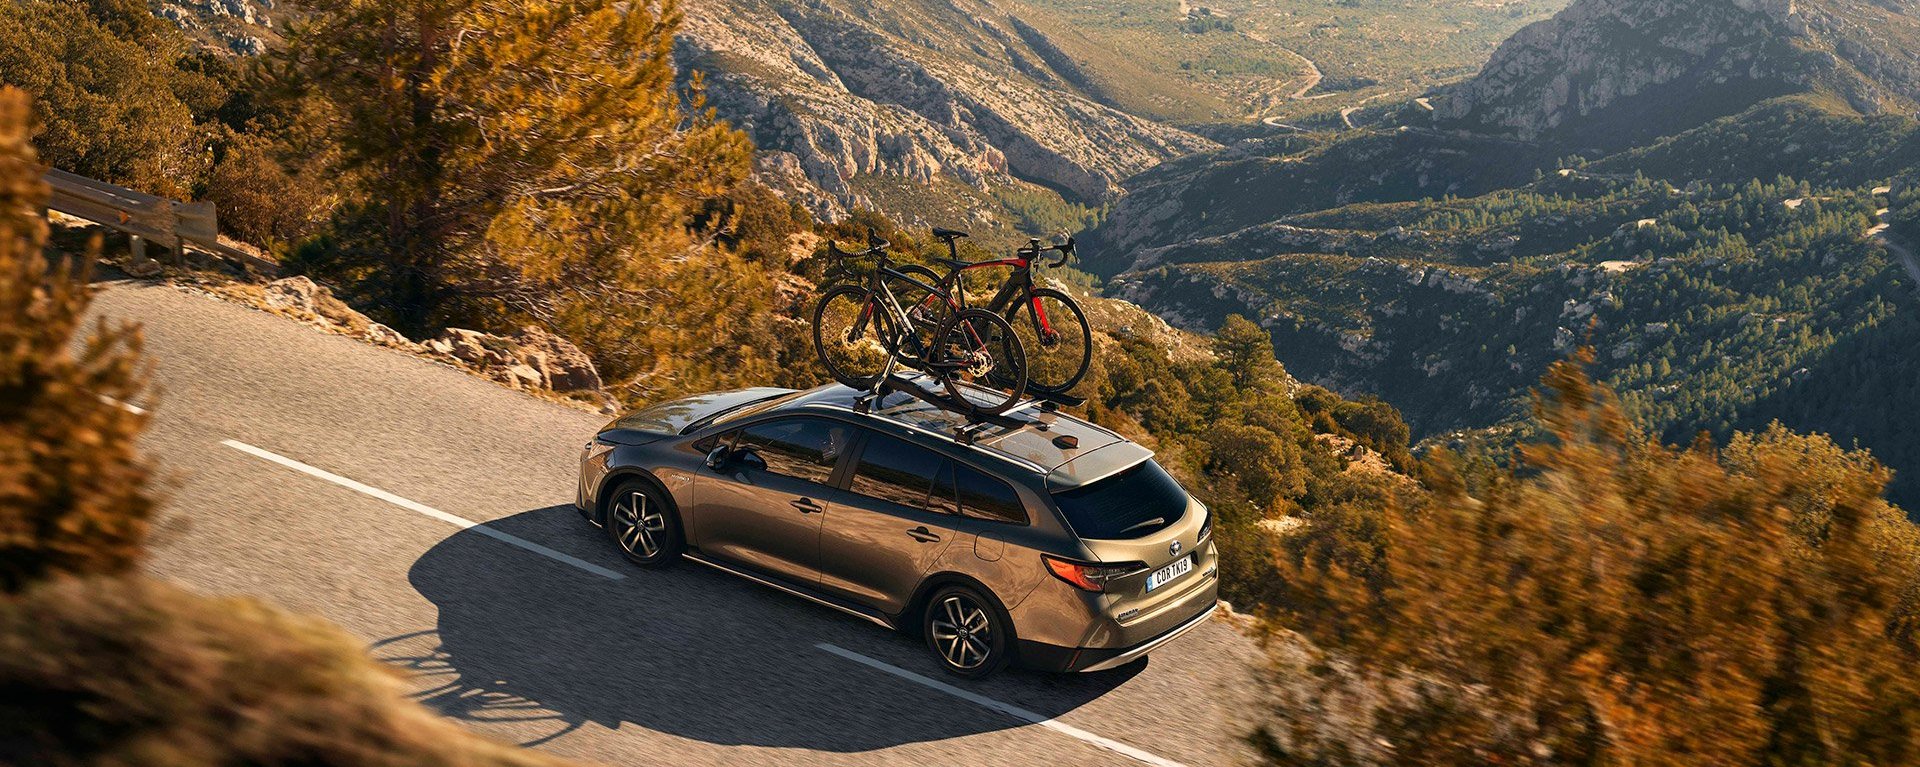 Grauer Toyota auf einer Landstraße in einer bergigen Landschaft von oben fotografiert